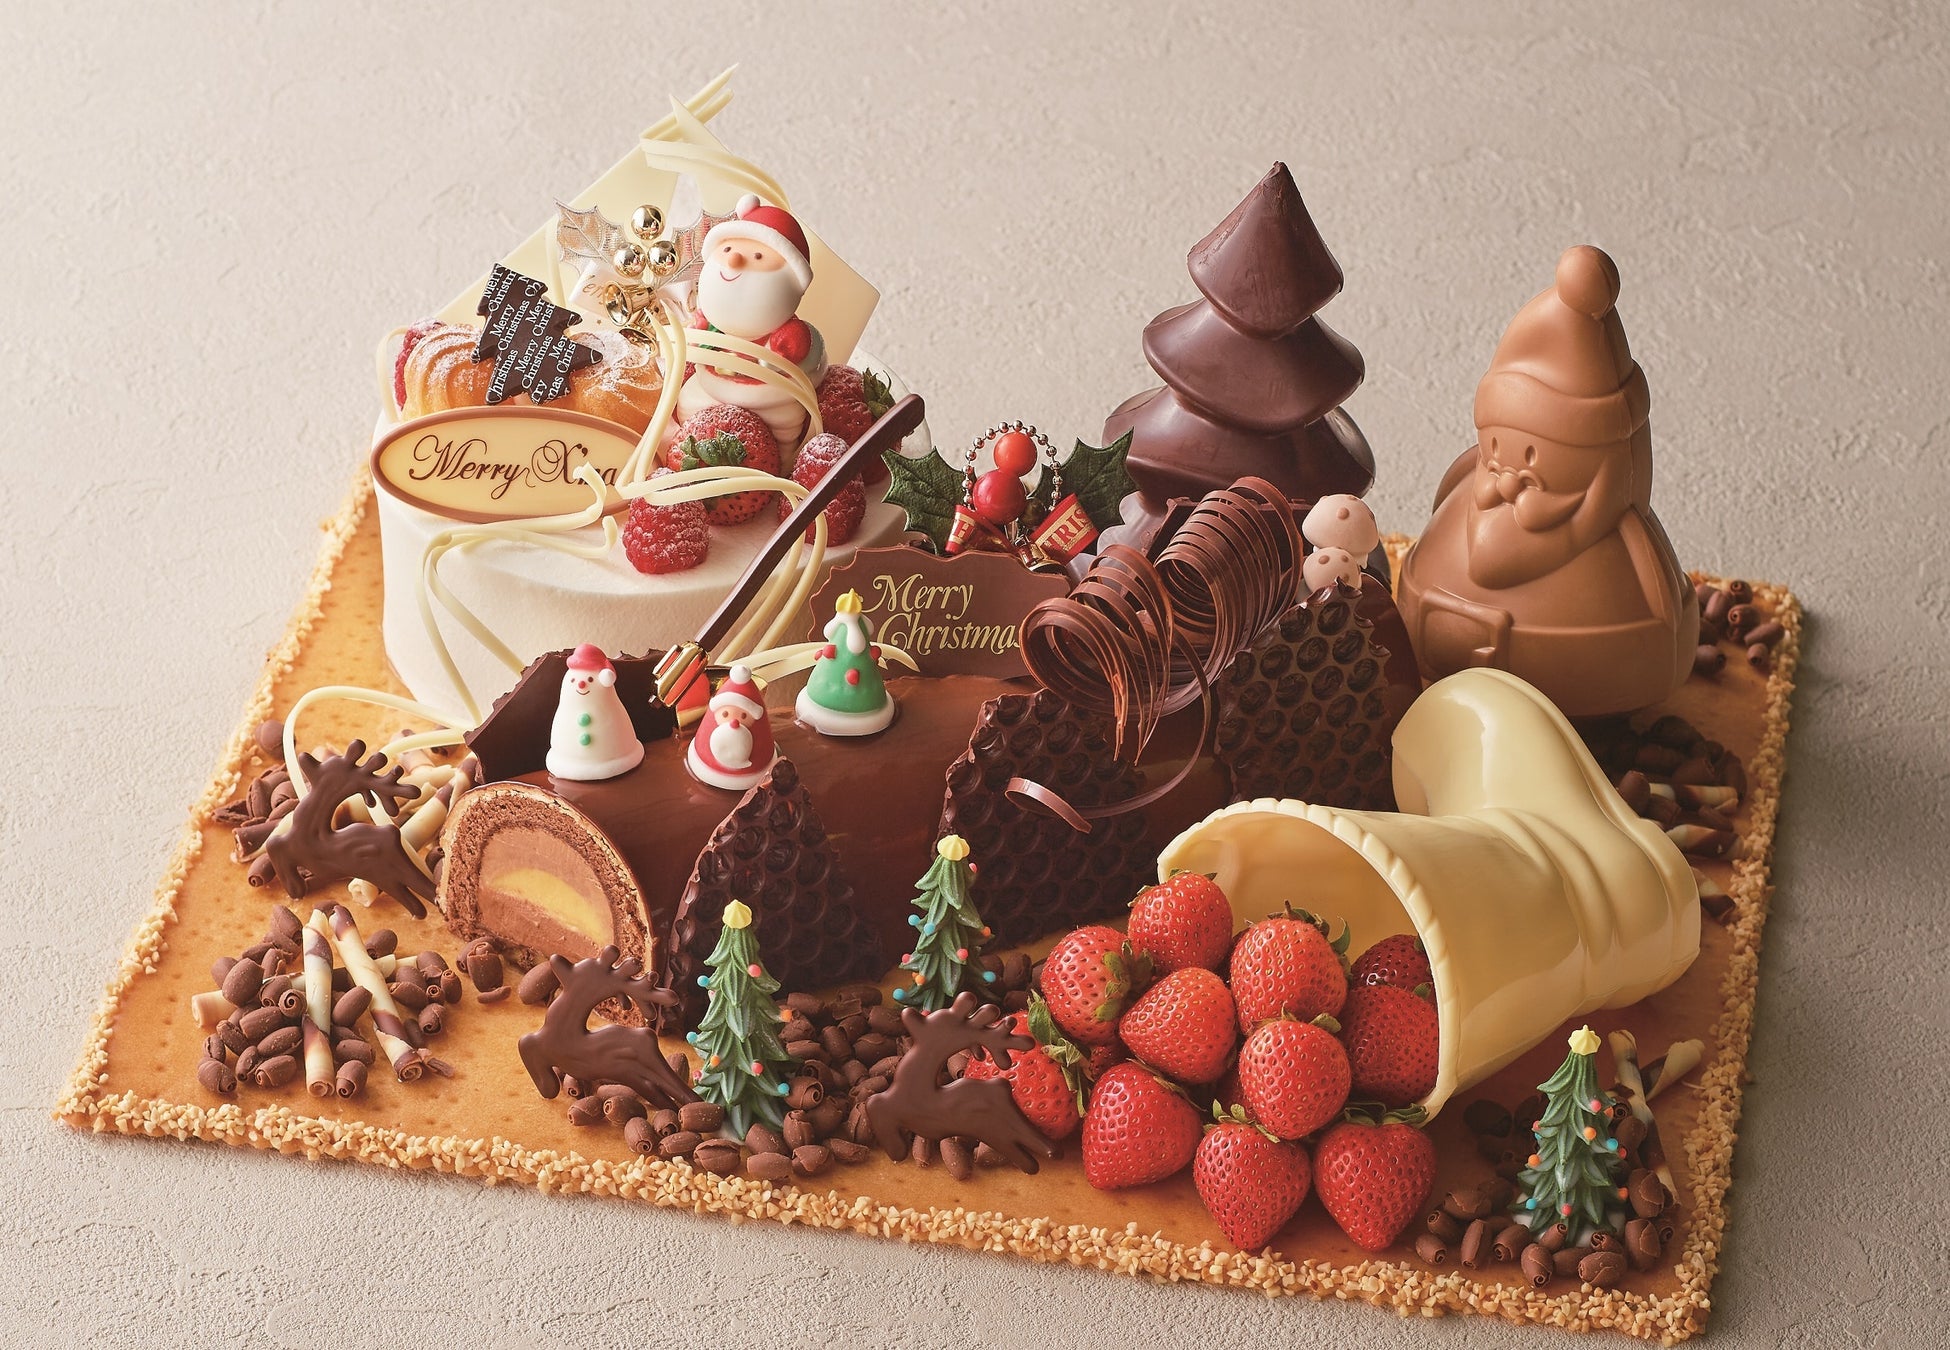 ホテル イースト21東京 22クリスマスケーキ の予約受付を10月5日より開始 オークラ ホテルズ リゾーツのプレスリリース